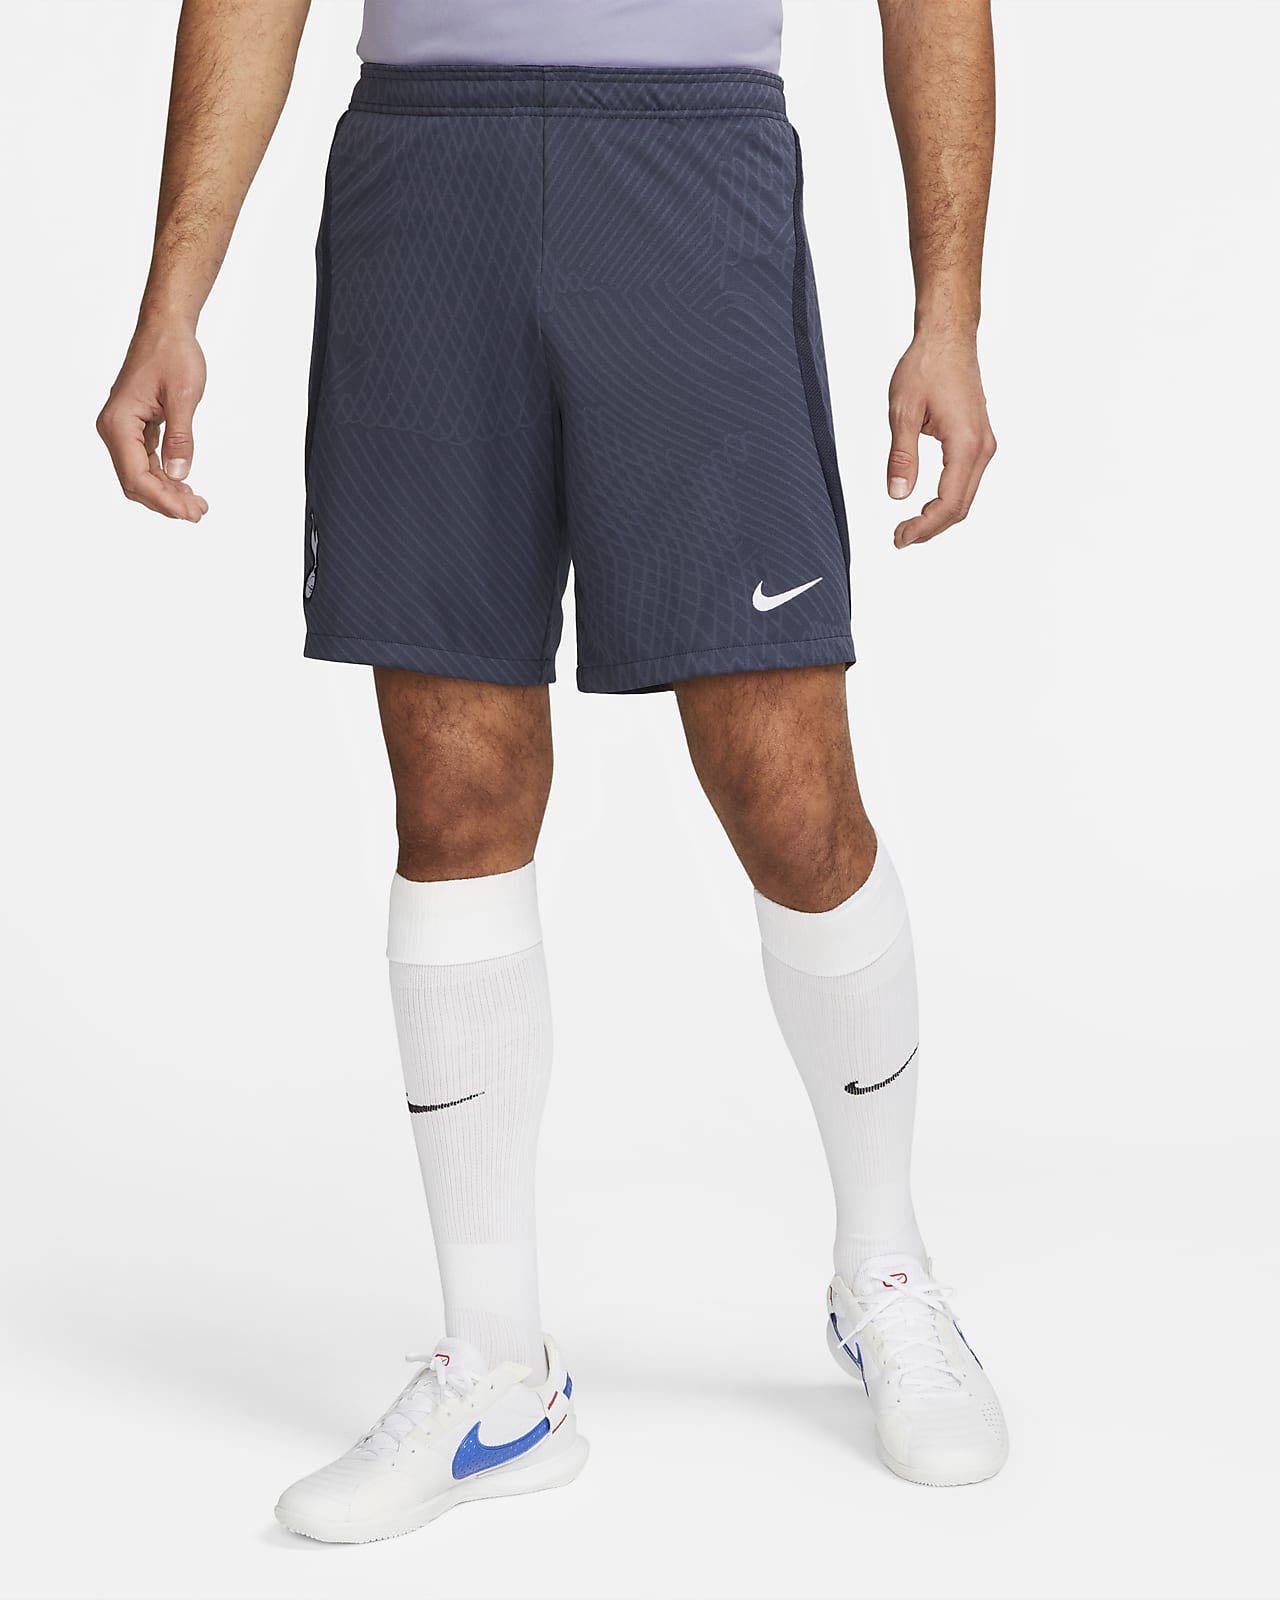 Stickade fotbollsshorts Tottenham Hotspur Strike Nike Dri-FIT för män